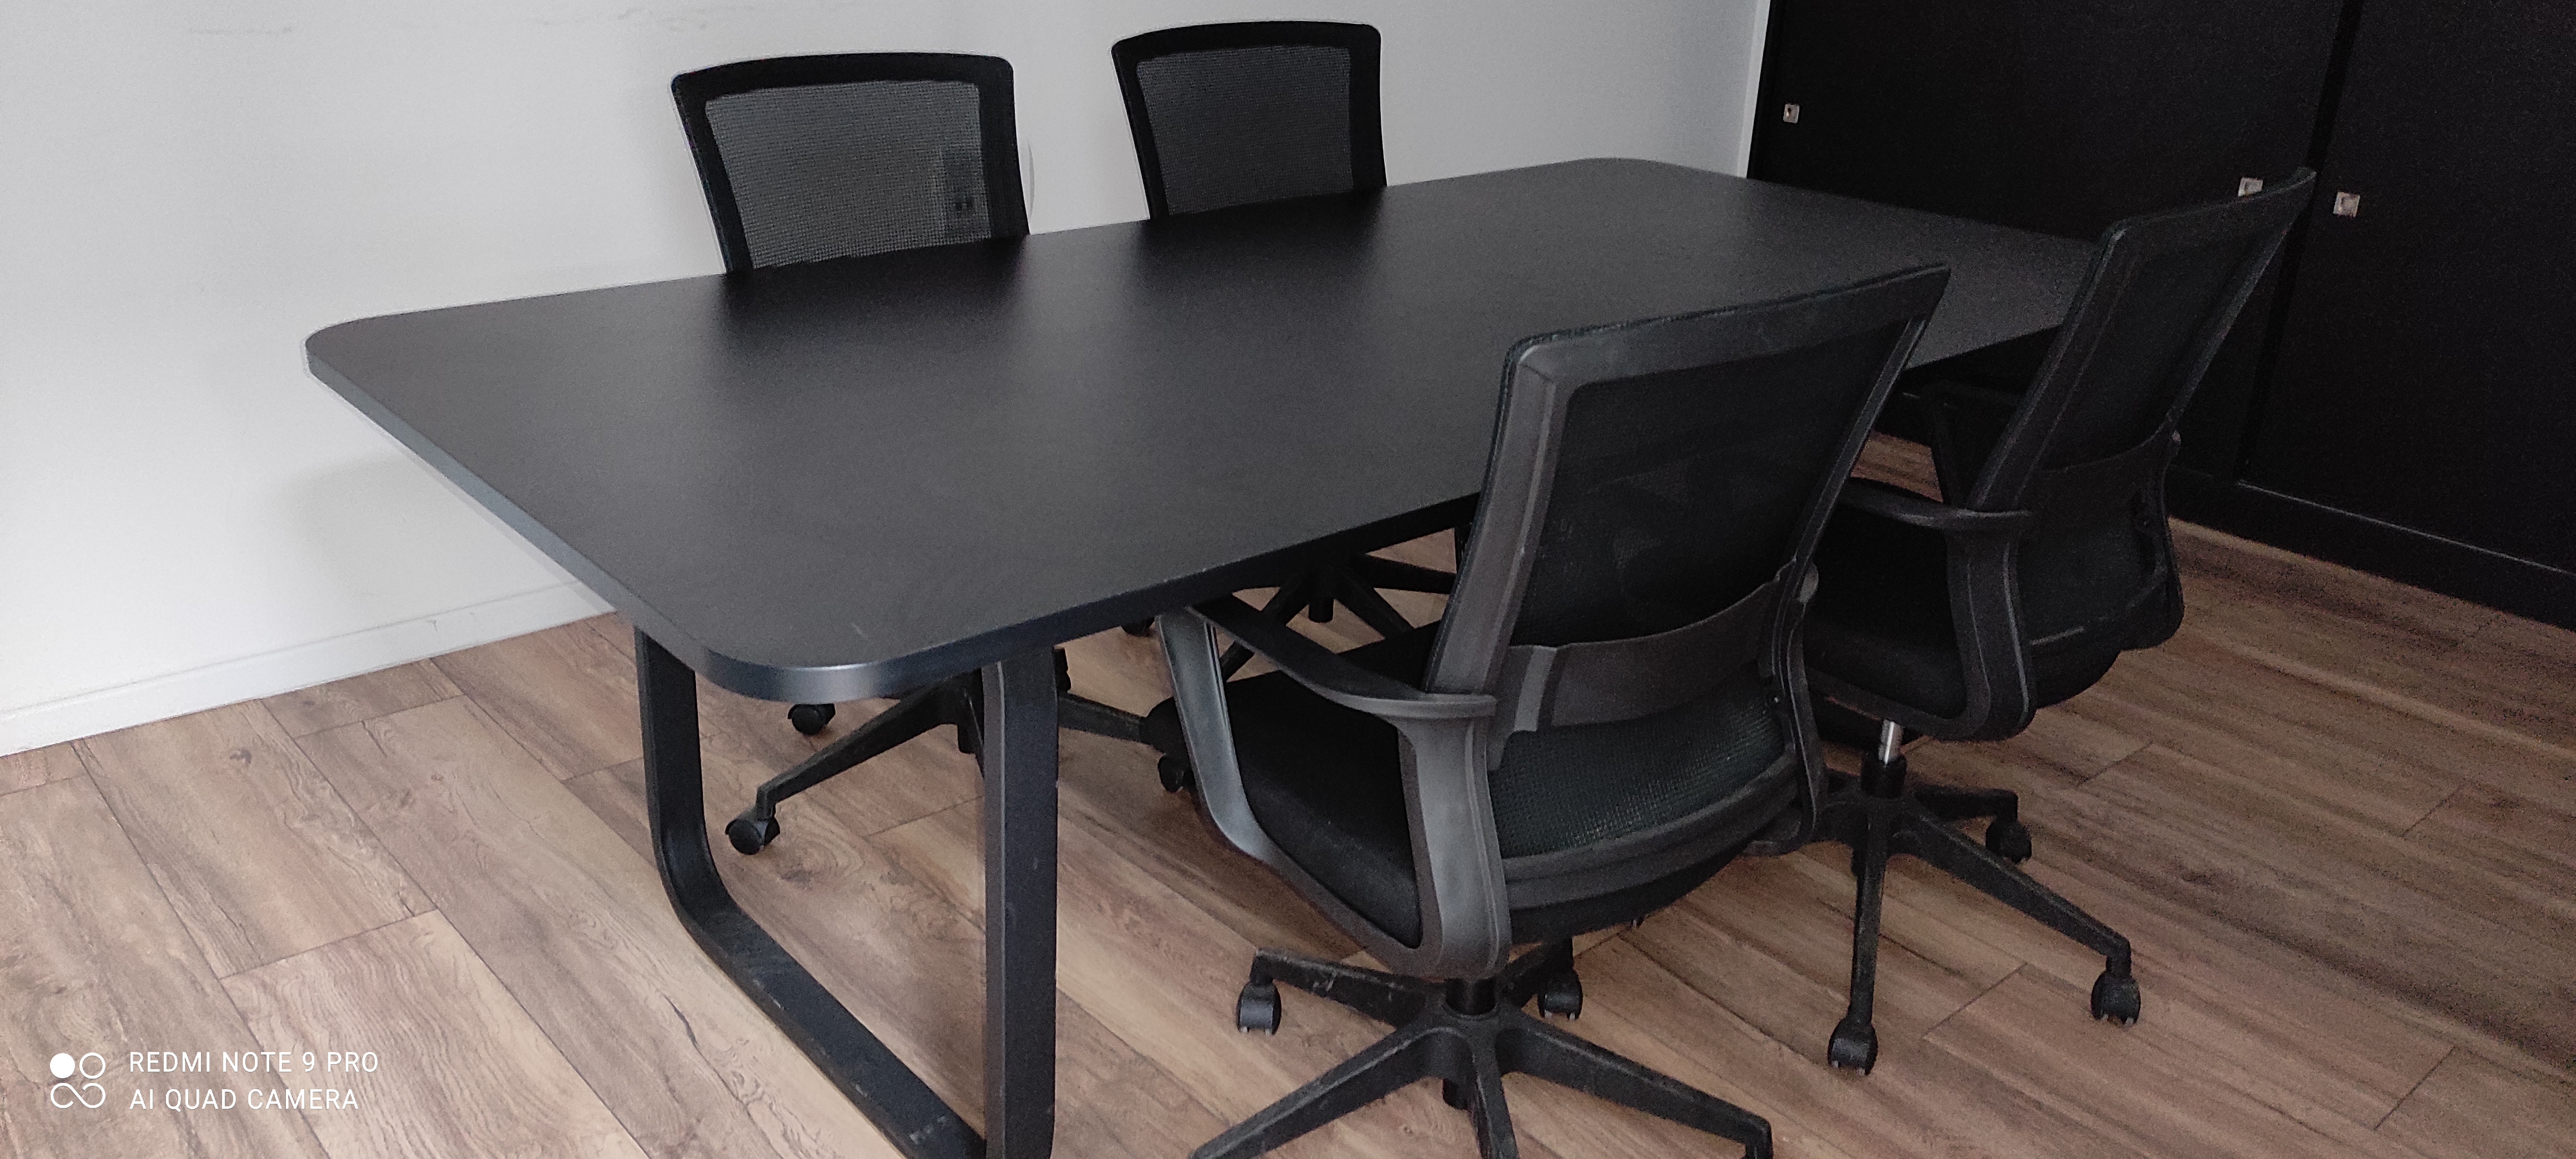 תמונה 1 ,שולחן ישיבות + שולחן מנהל למכירה בראשון לציון ציוד משרדי  ריהוט משרדי